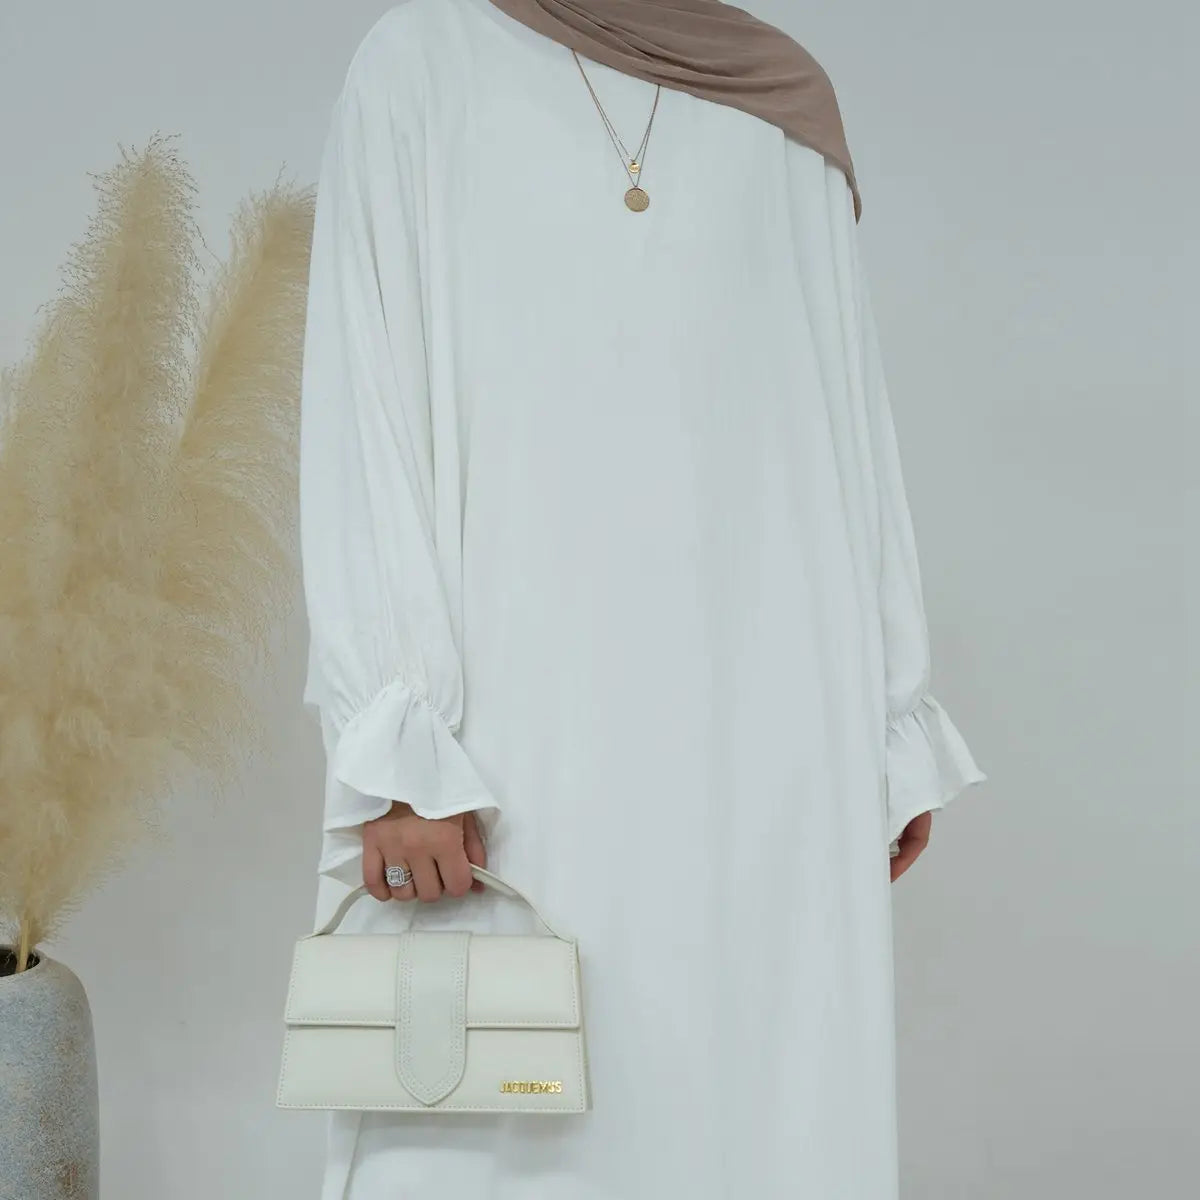 Cotton Blend Fabric Abaya Dress